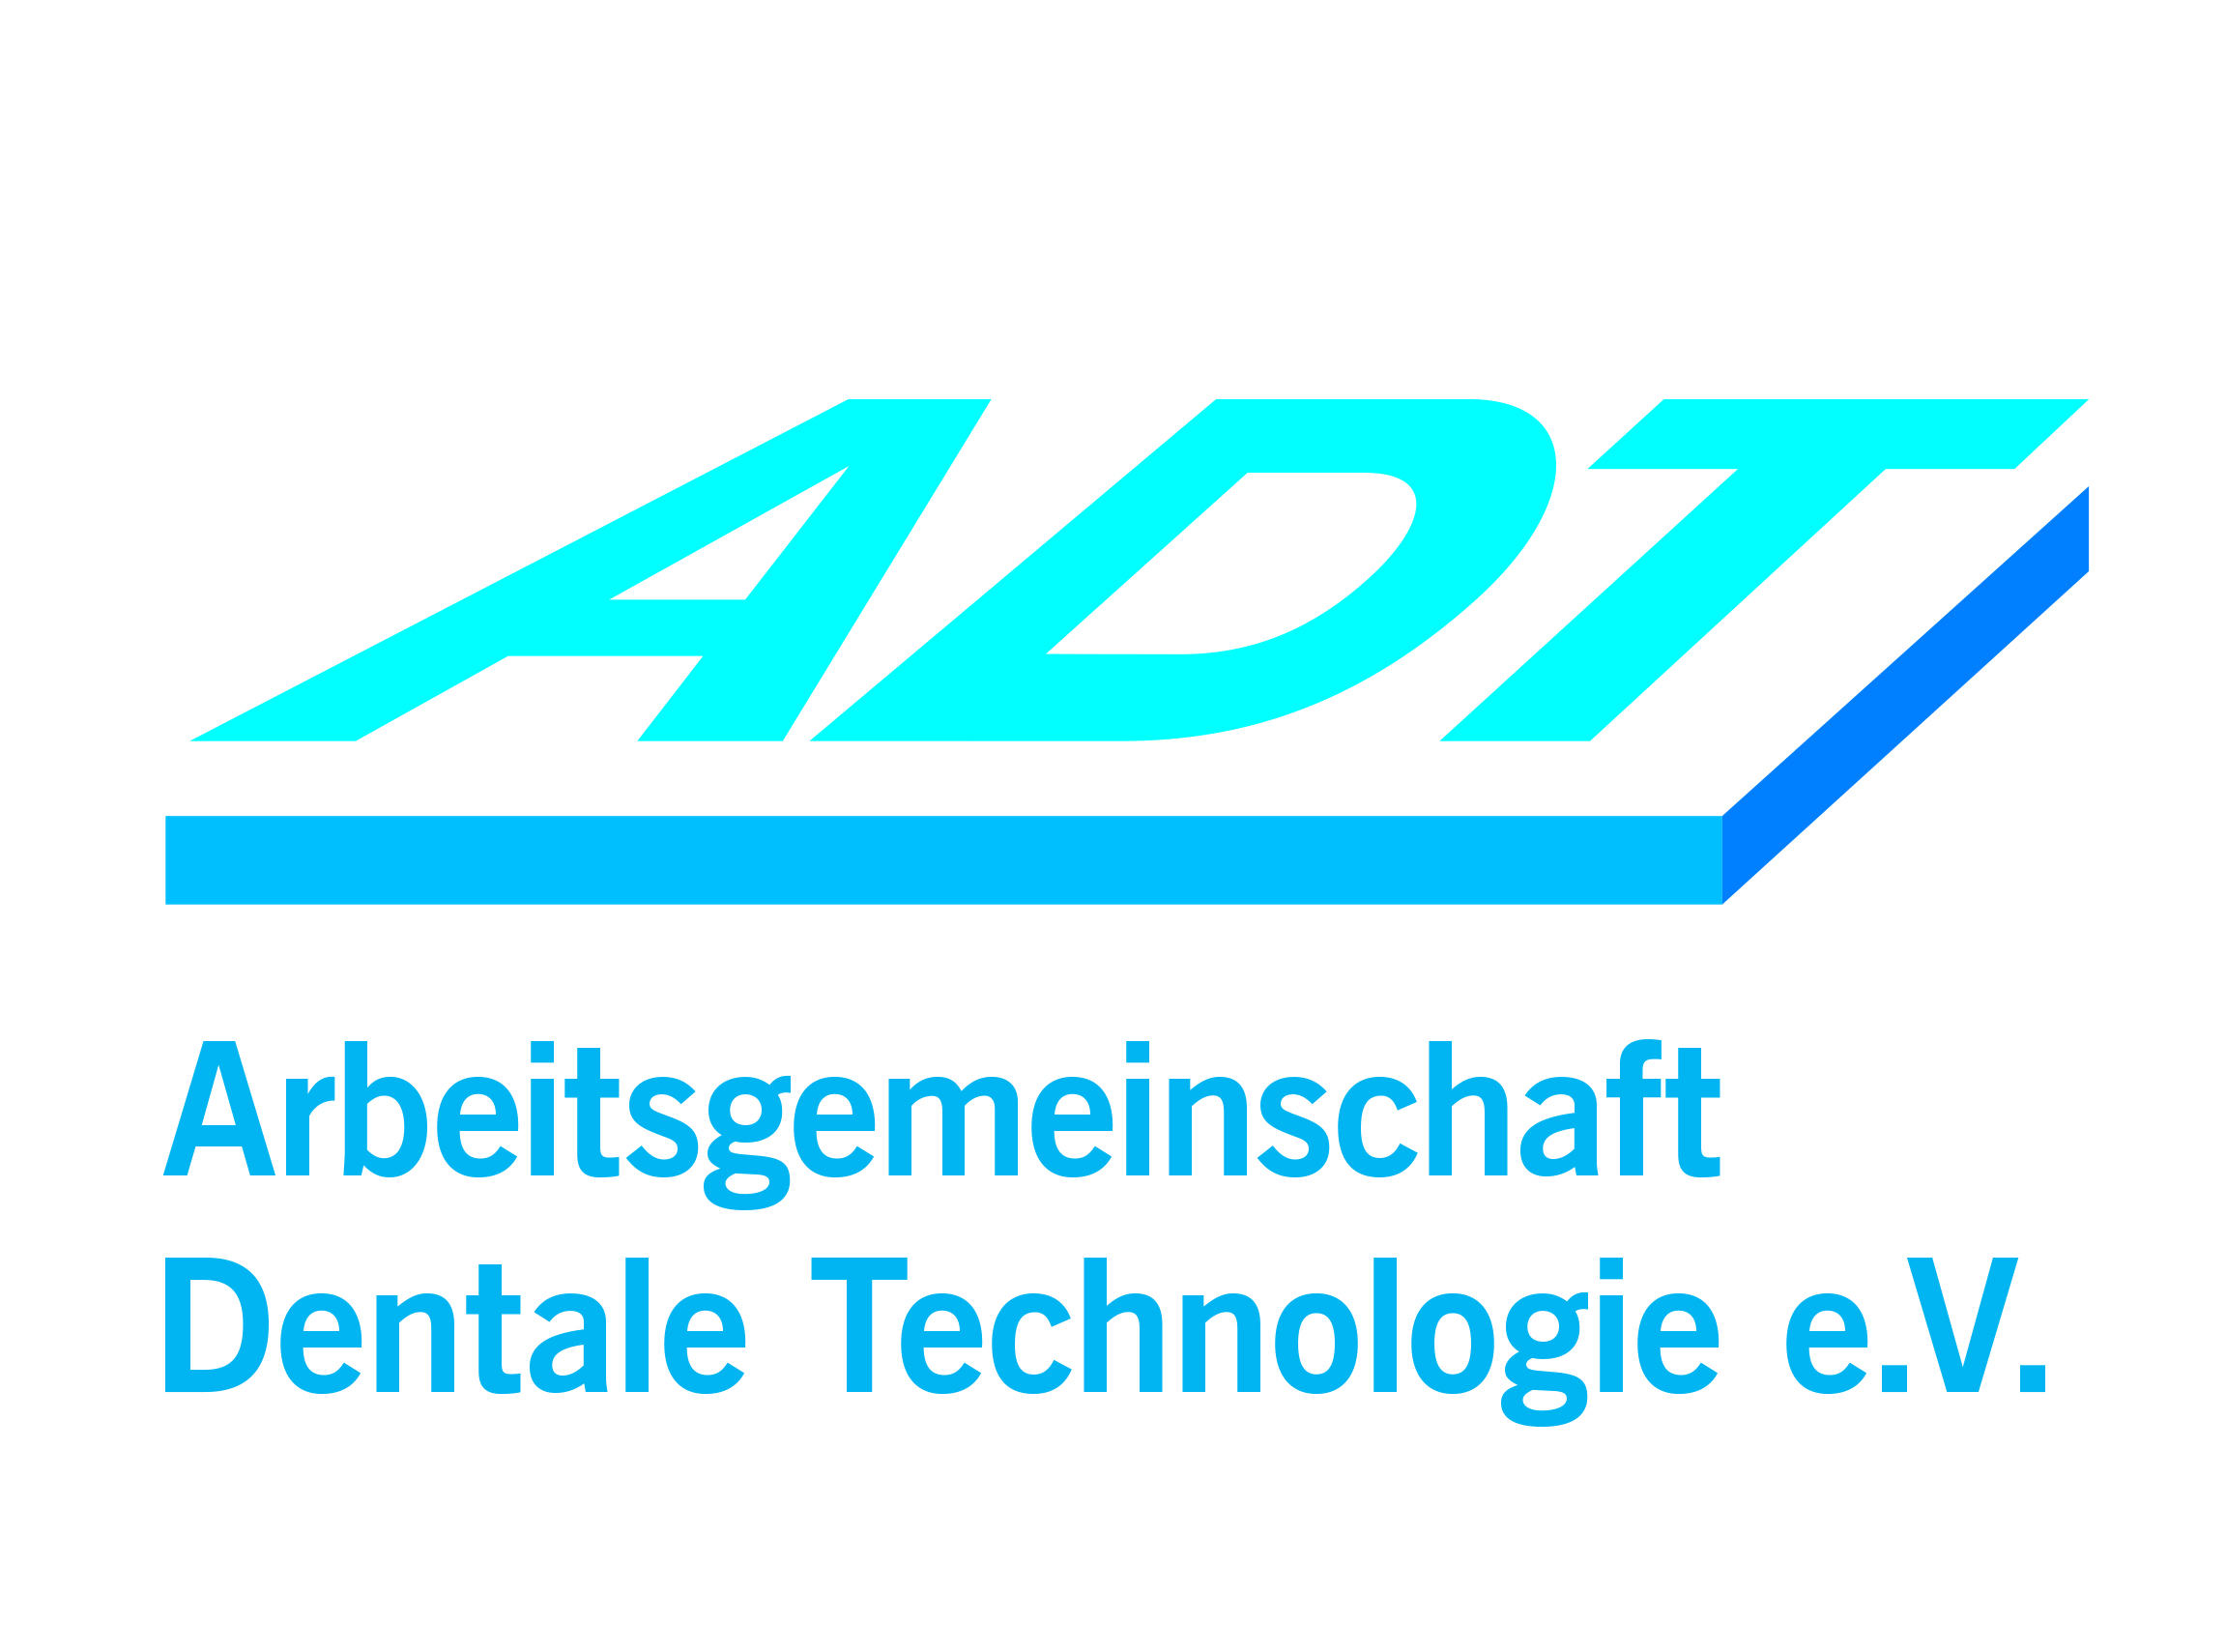 ADT Arbeitsgemeinschaft Dentale Technologie